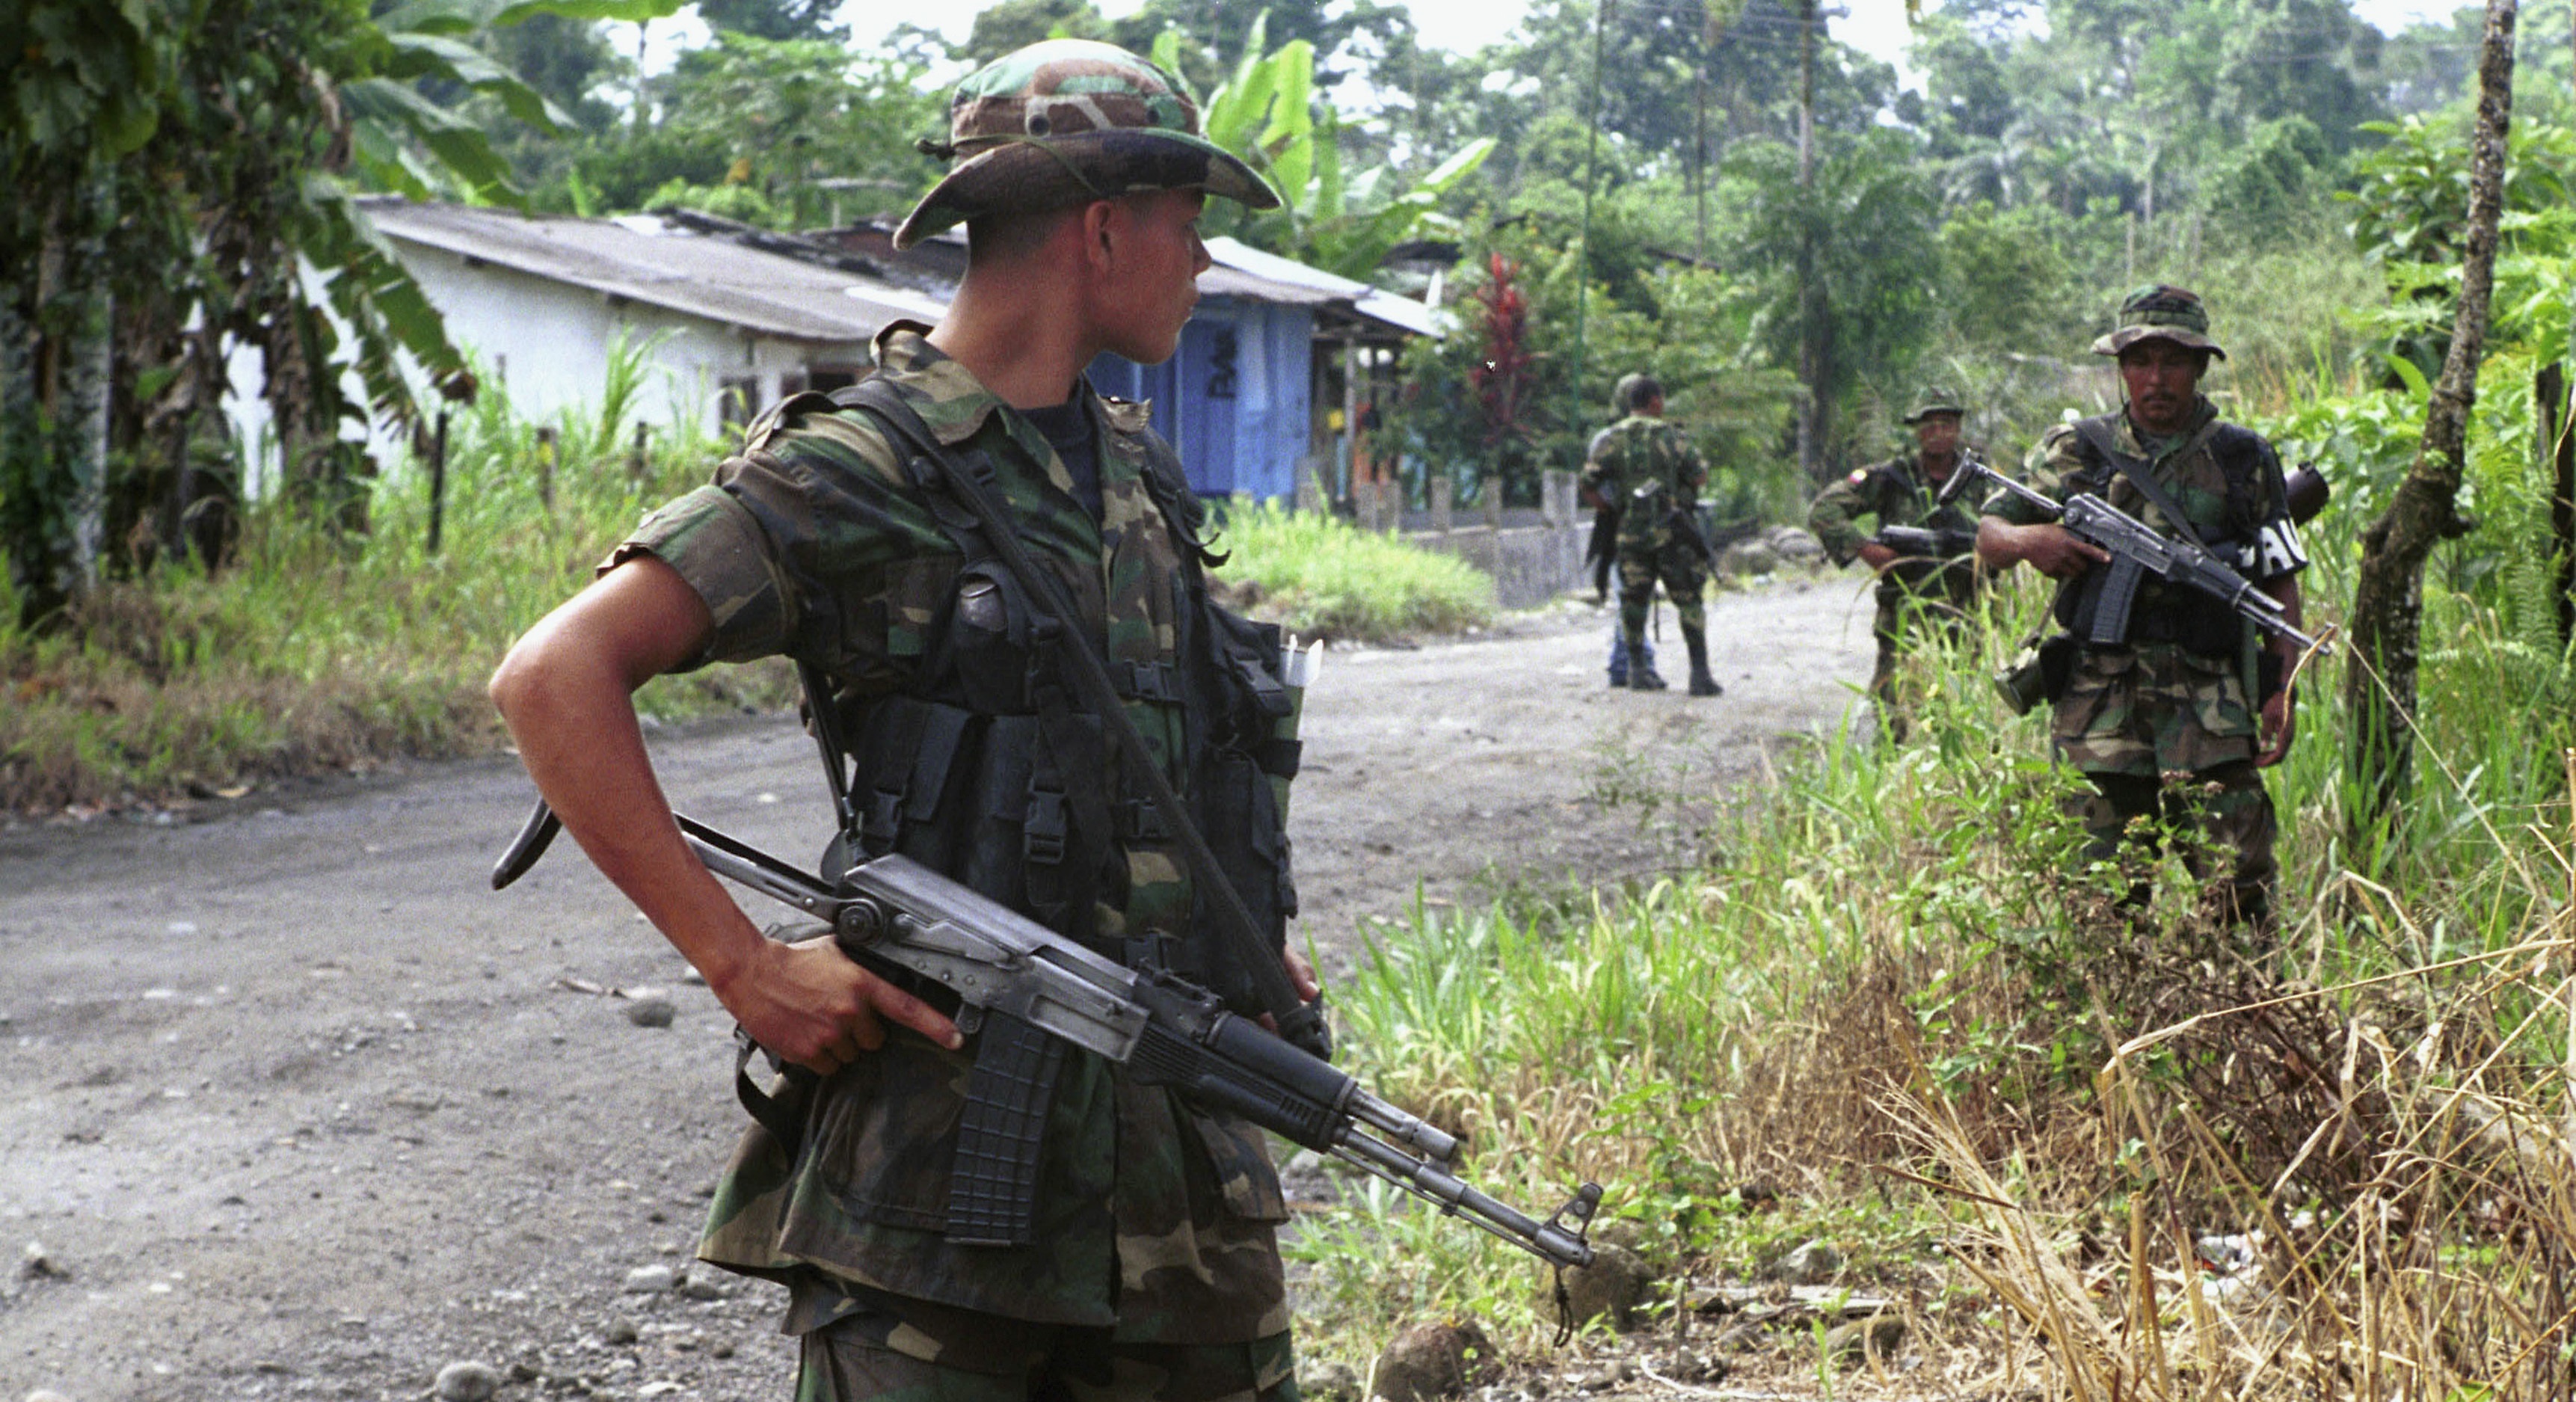 14-12-2000 Paramilitares de las Autodefensas Unidas de Colombia (AUC)
POLITICA SUDAMÉRICA COLOMBIA
CARLOS VILLALON
